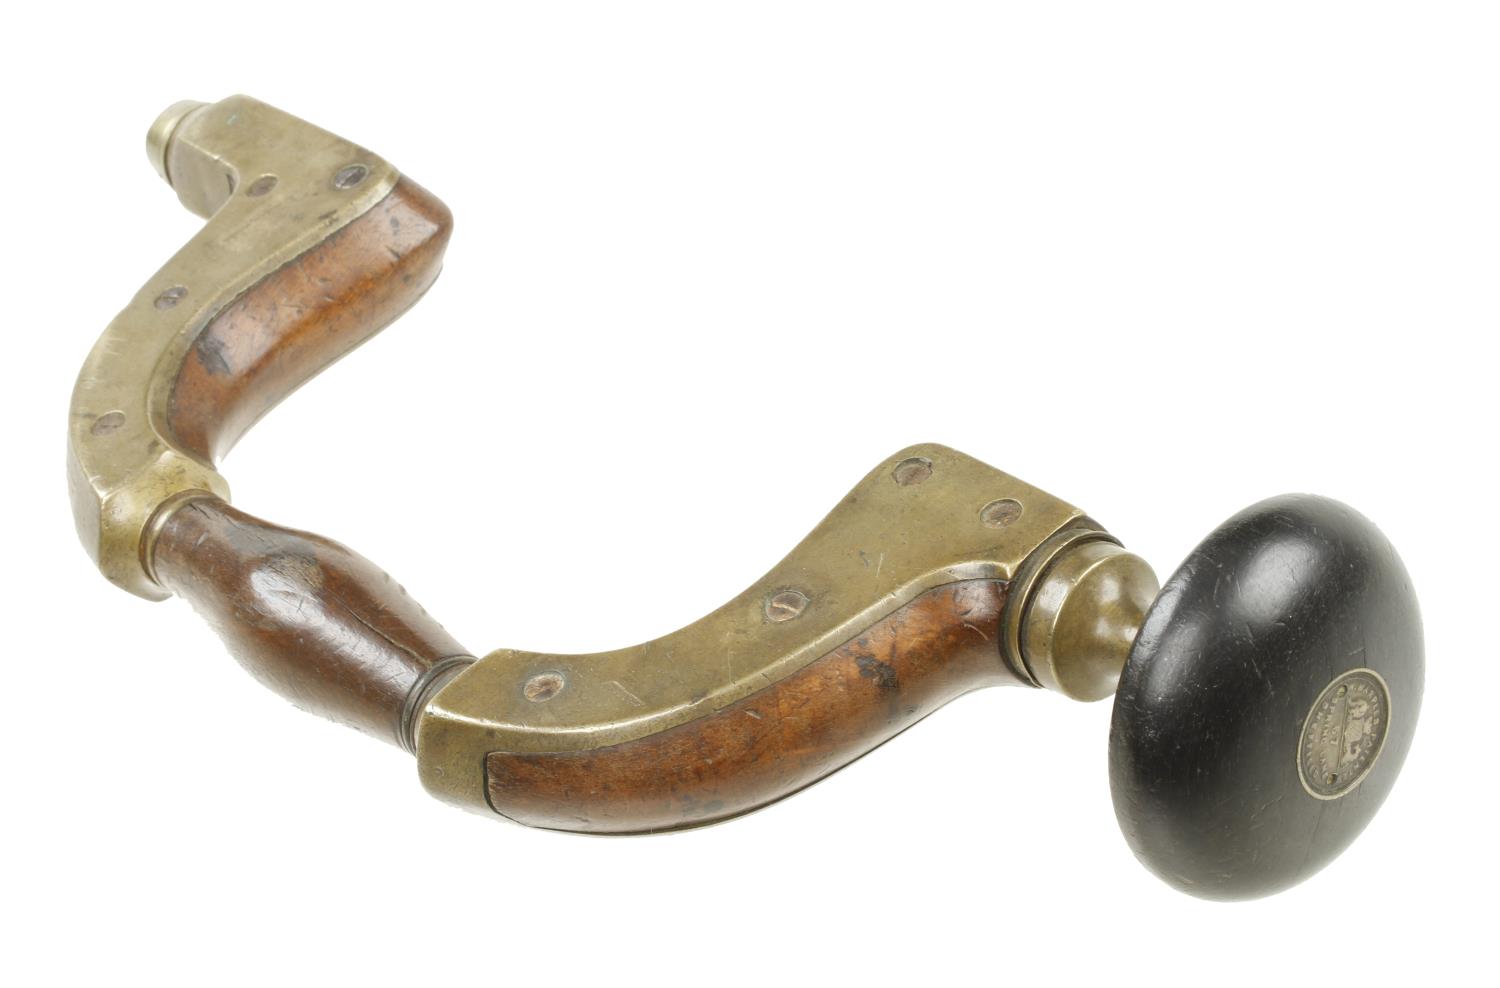 An Ultimatum brass framed beech brace by MARPLES with brass disc in ebony head G+ - Image 2 of 2